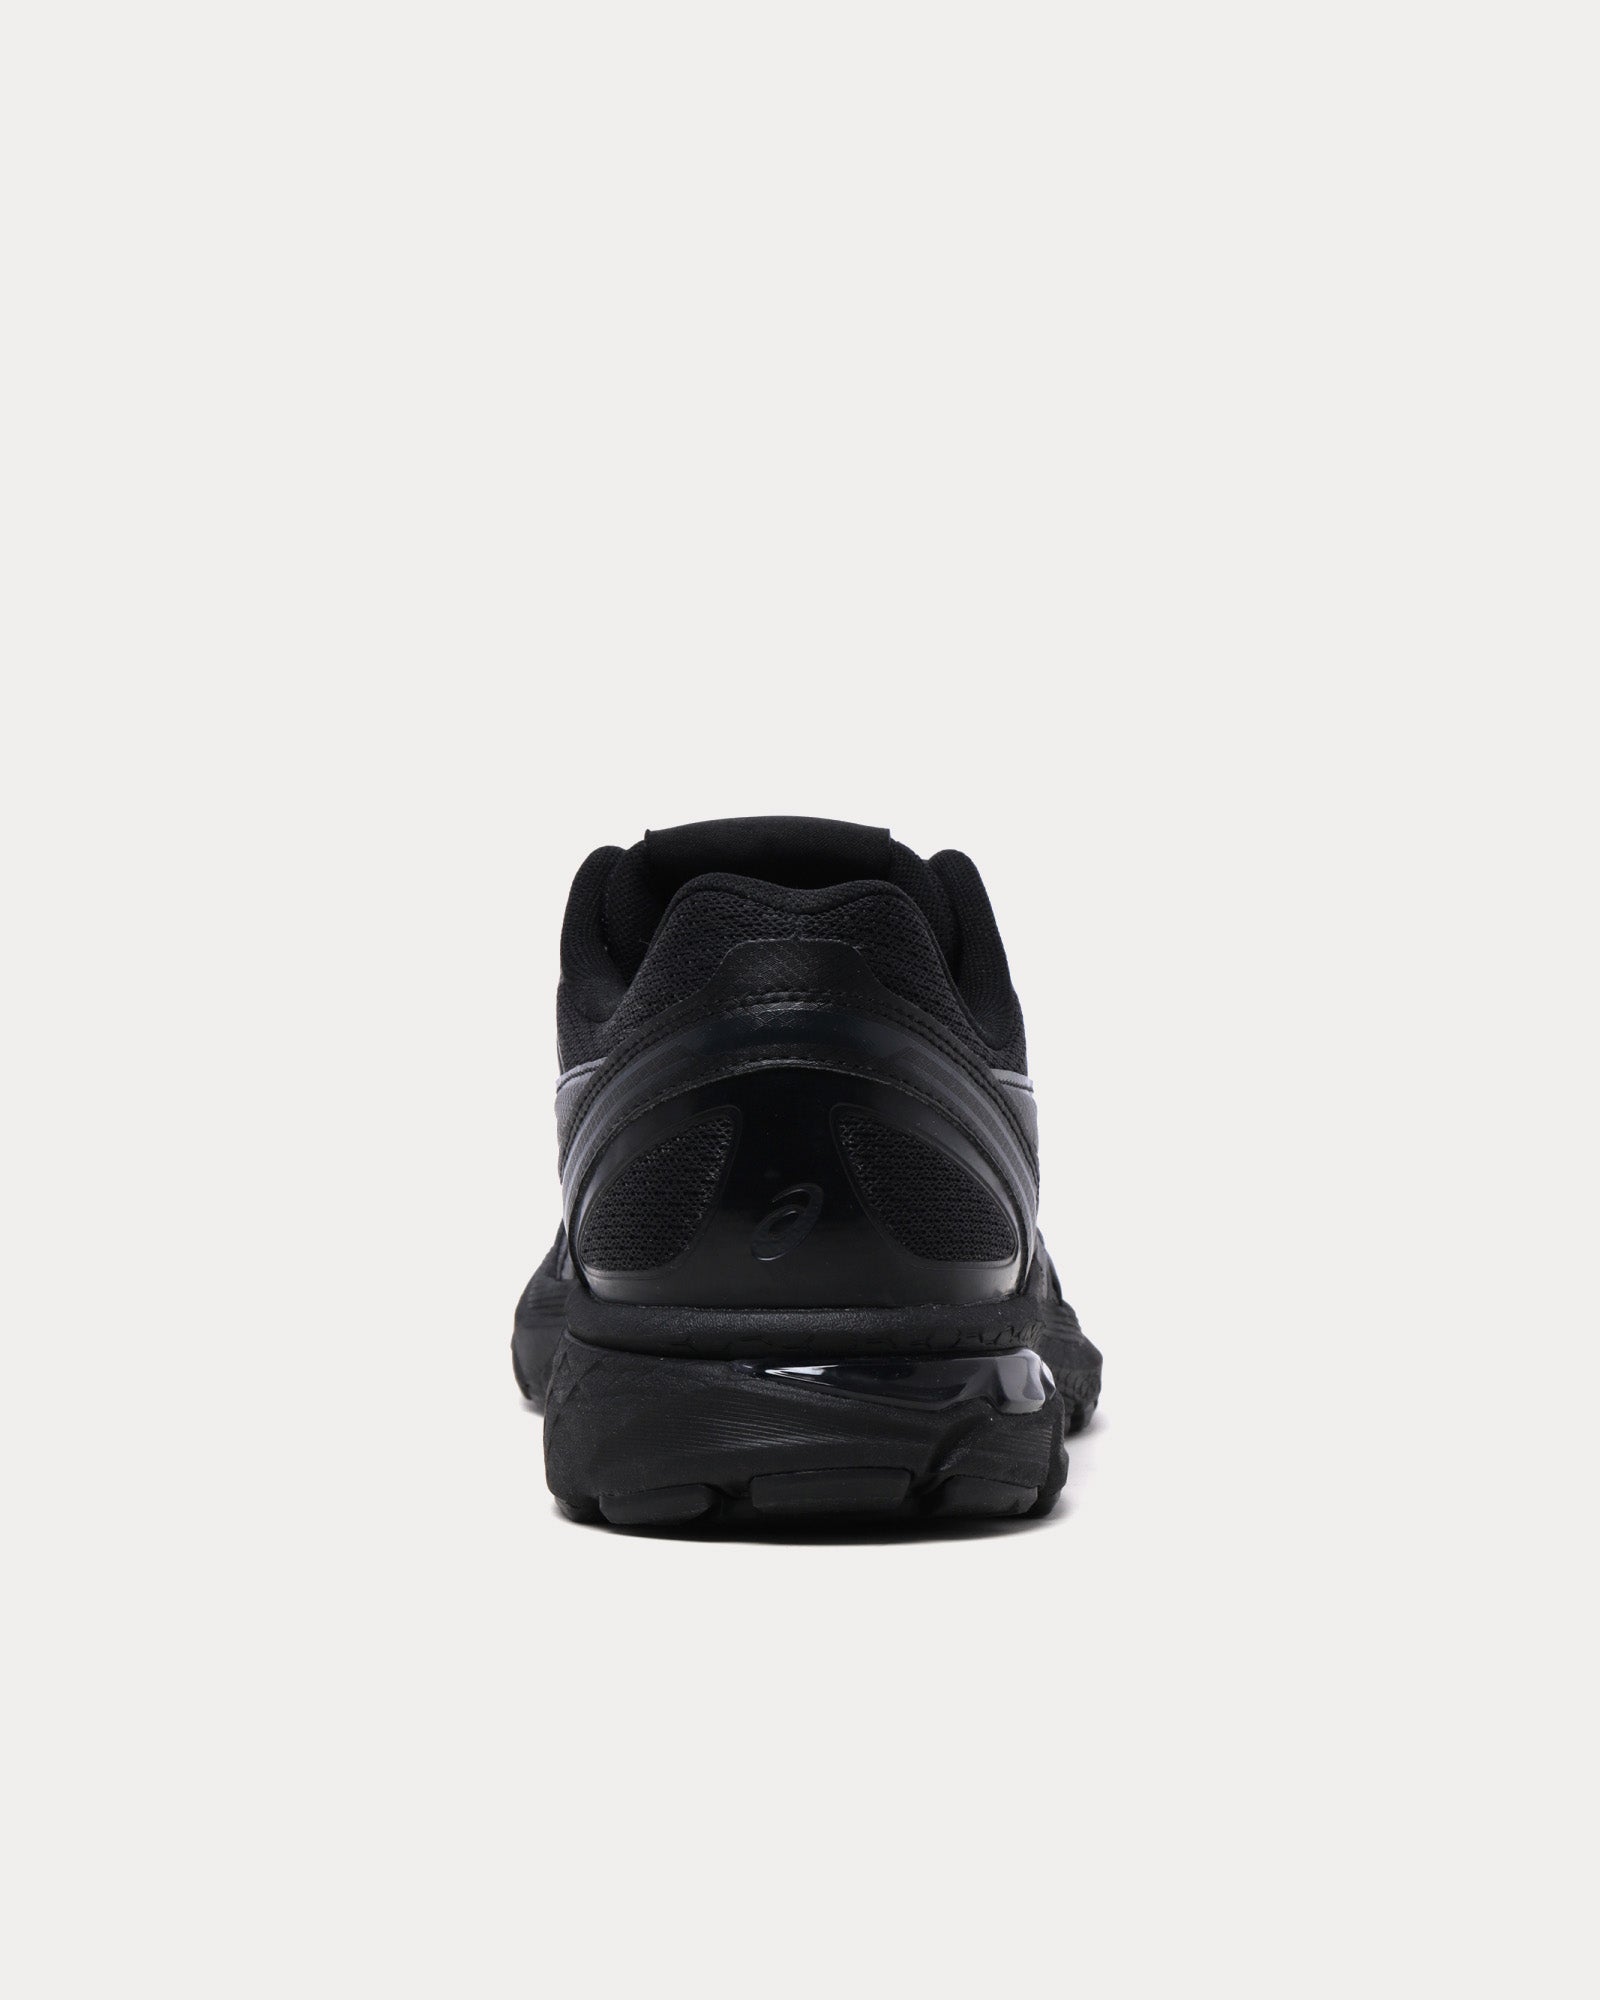 Asics x CDG Shirt - Gel-Terrain Black Low Top Sneakers